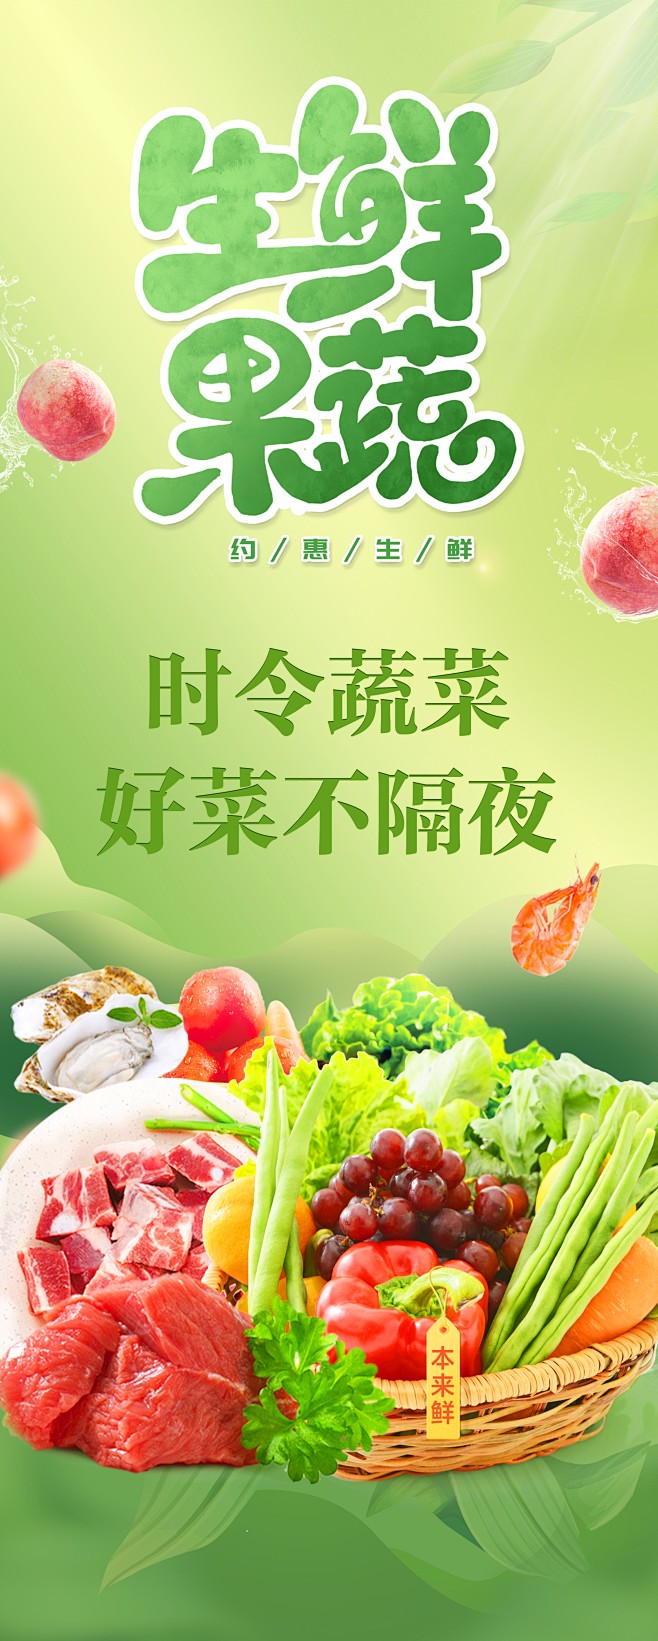 生鲜超市果蔬海报-志设网-zs9.com